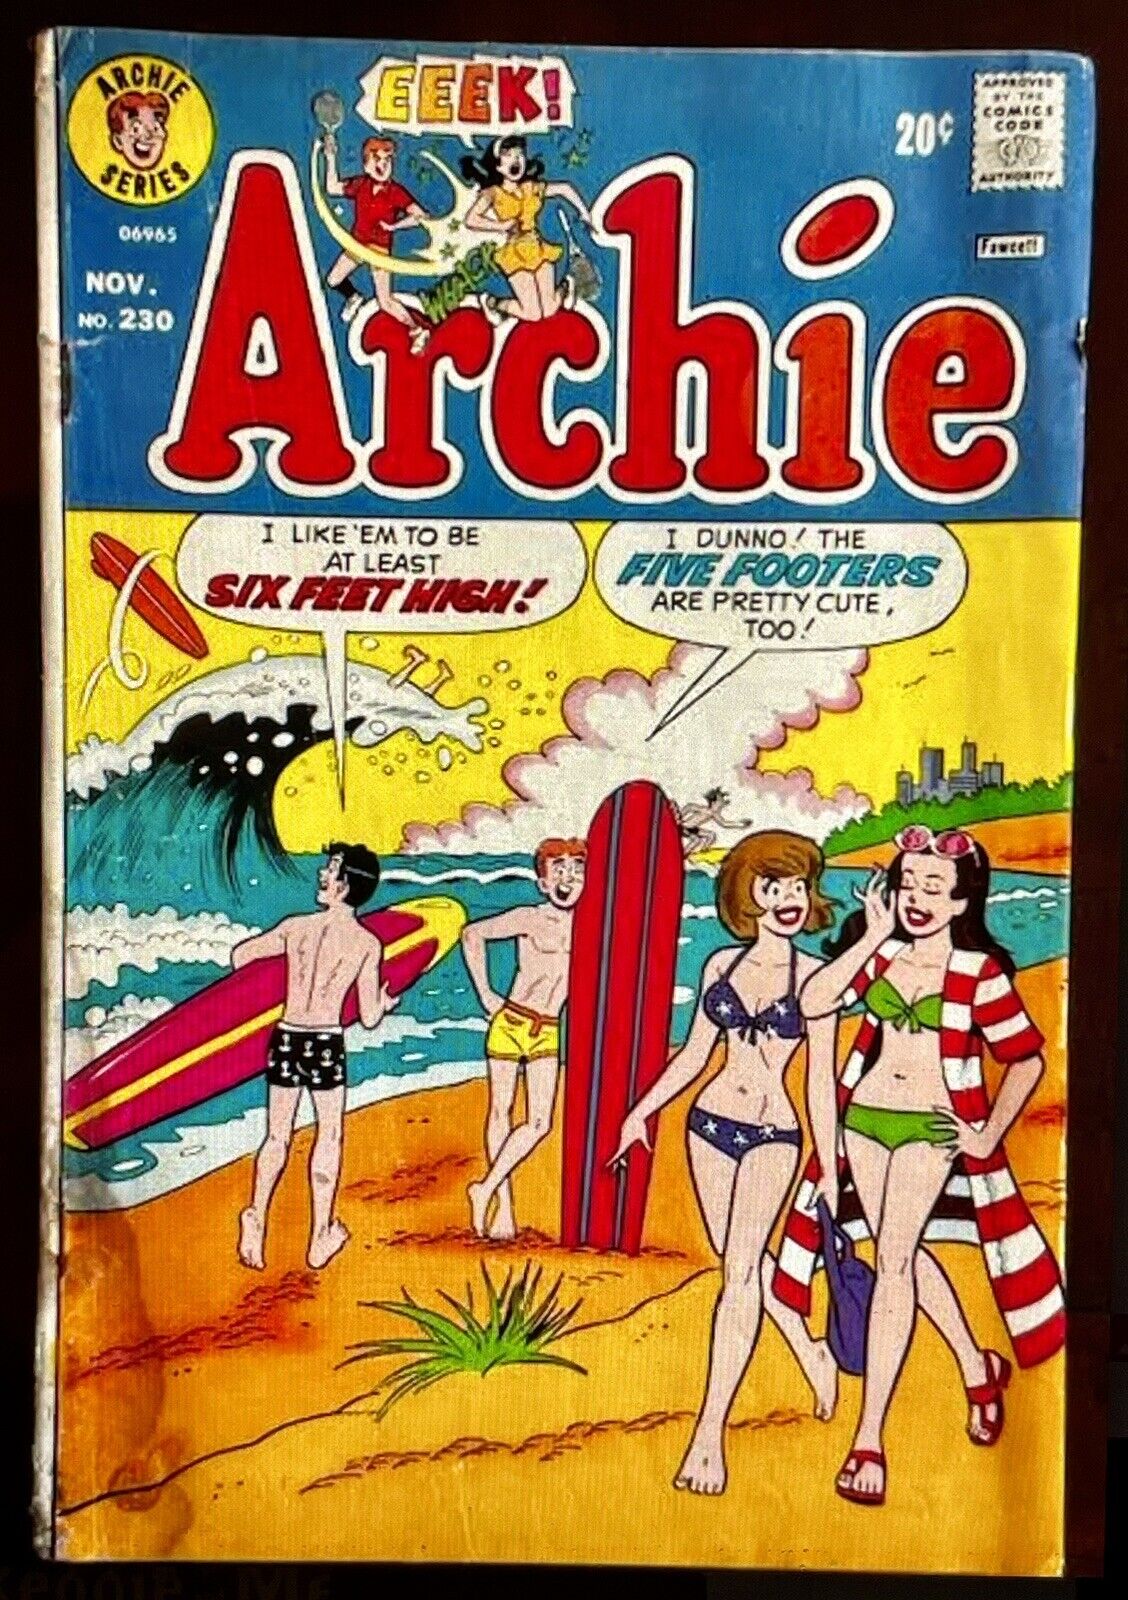 Rare Vintage Archie Series Comics Book # 230 Nov. 1973 20 Cents